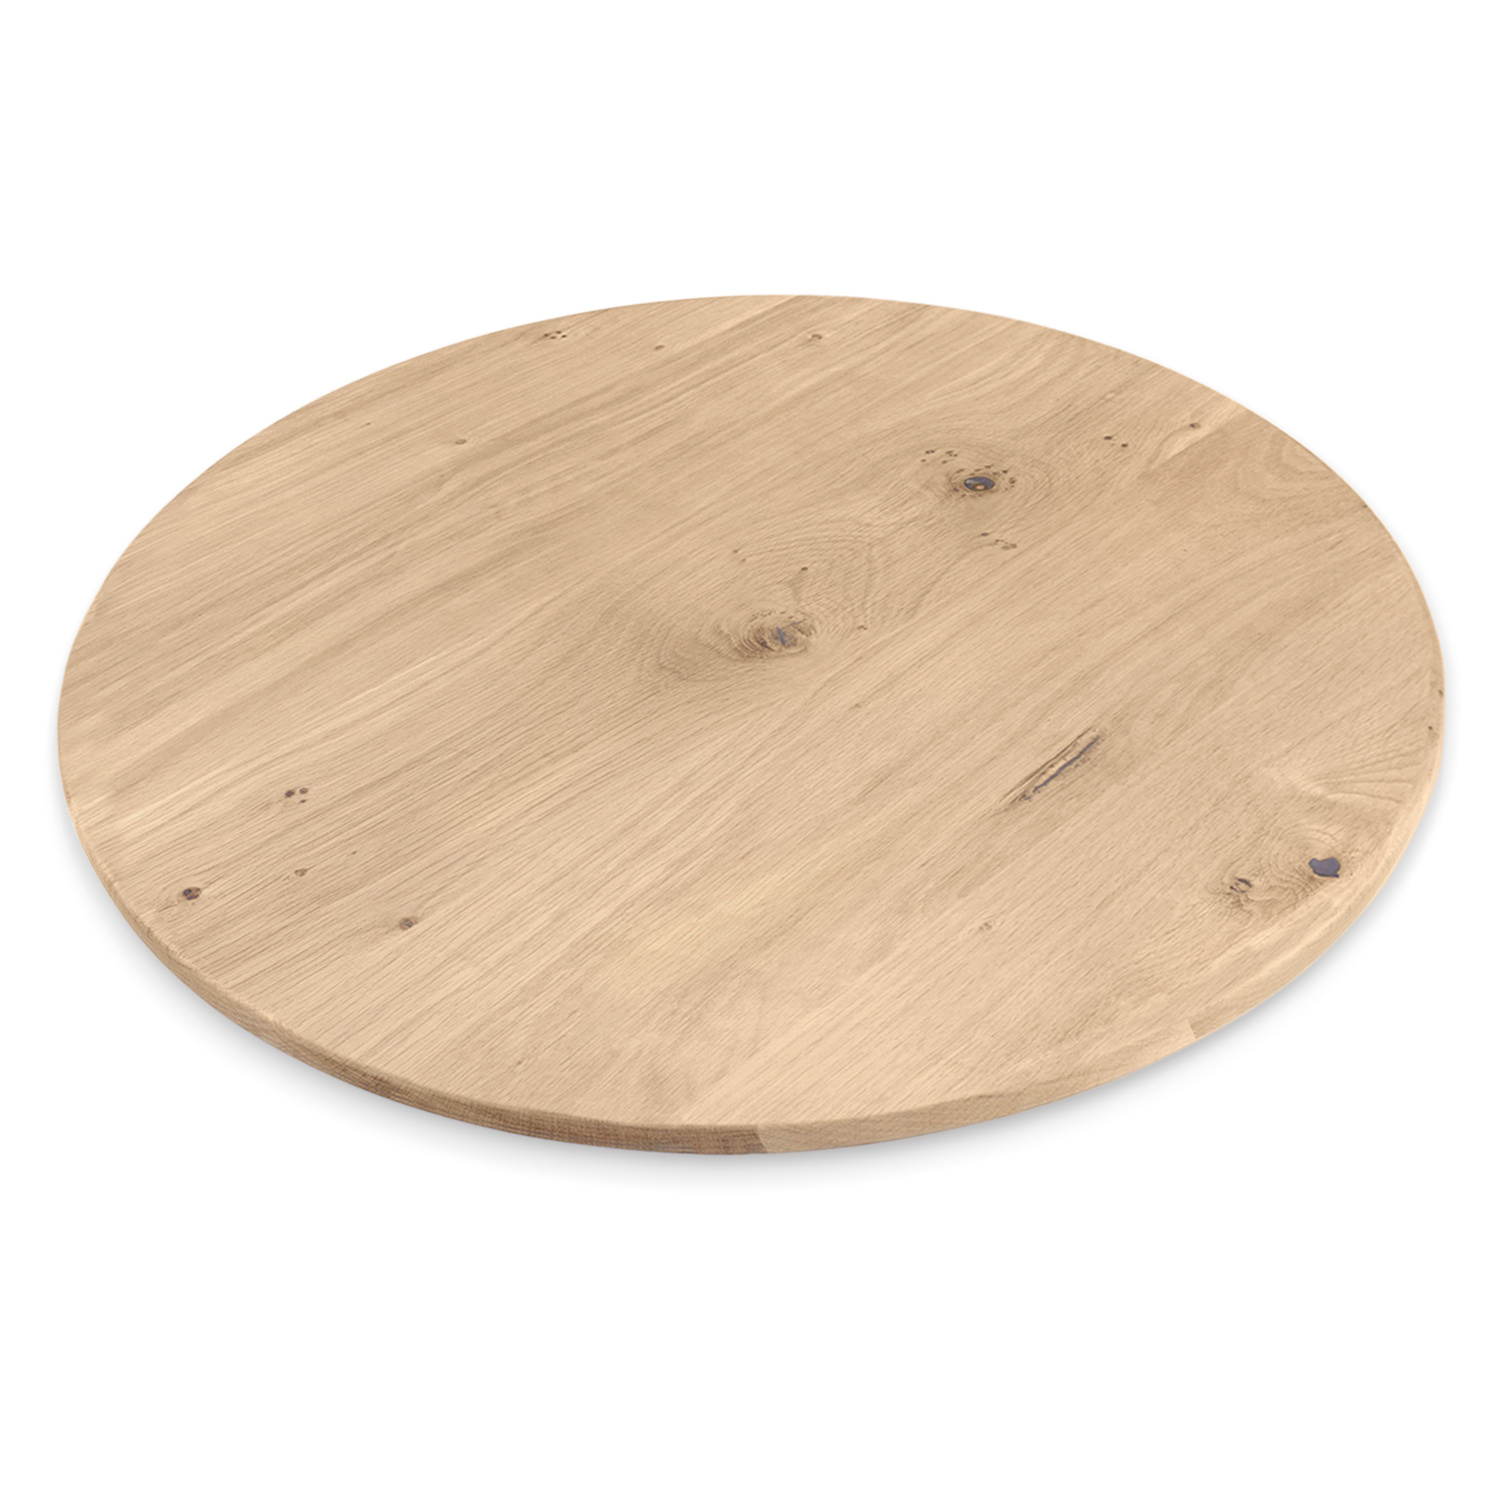  Tischplatte Wildeiche rund - 2,5 cm dick (1-Schicht) - XXL Lamellen (14-20 cm breit) - Asteiche (rustikal) - verleimt & künstlich getrocknet (HF 8-12%) - verschiedene Größen